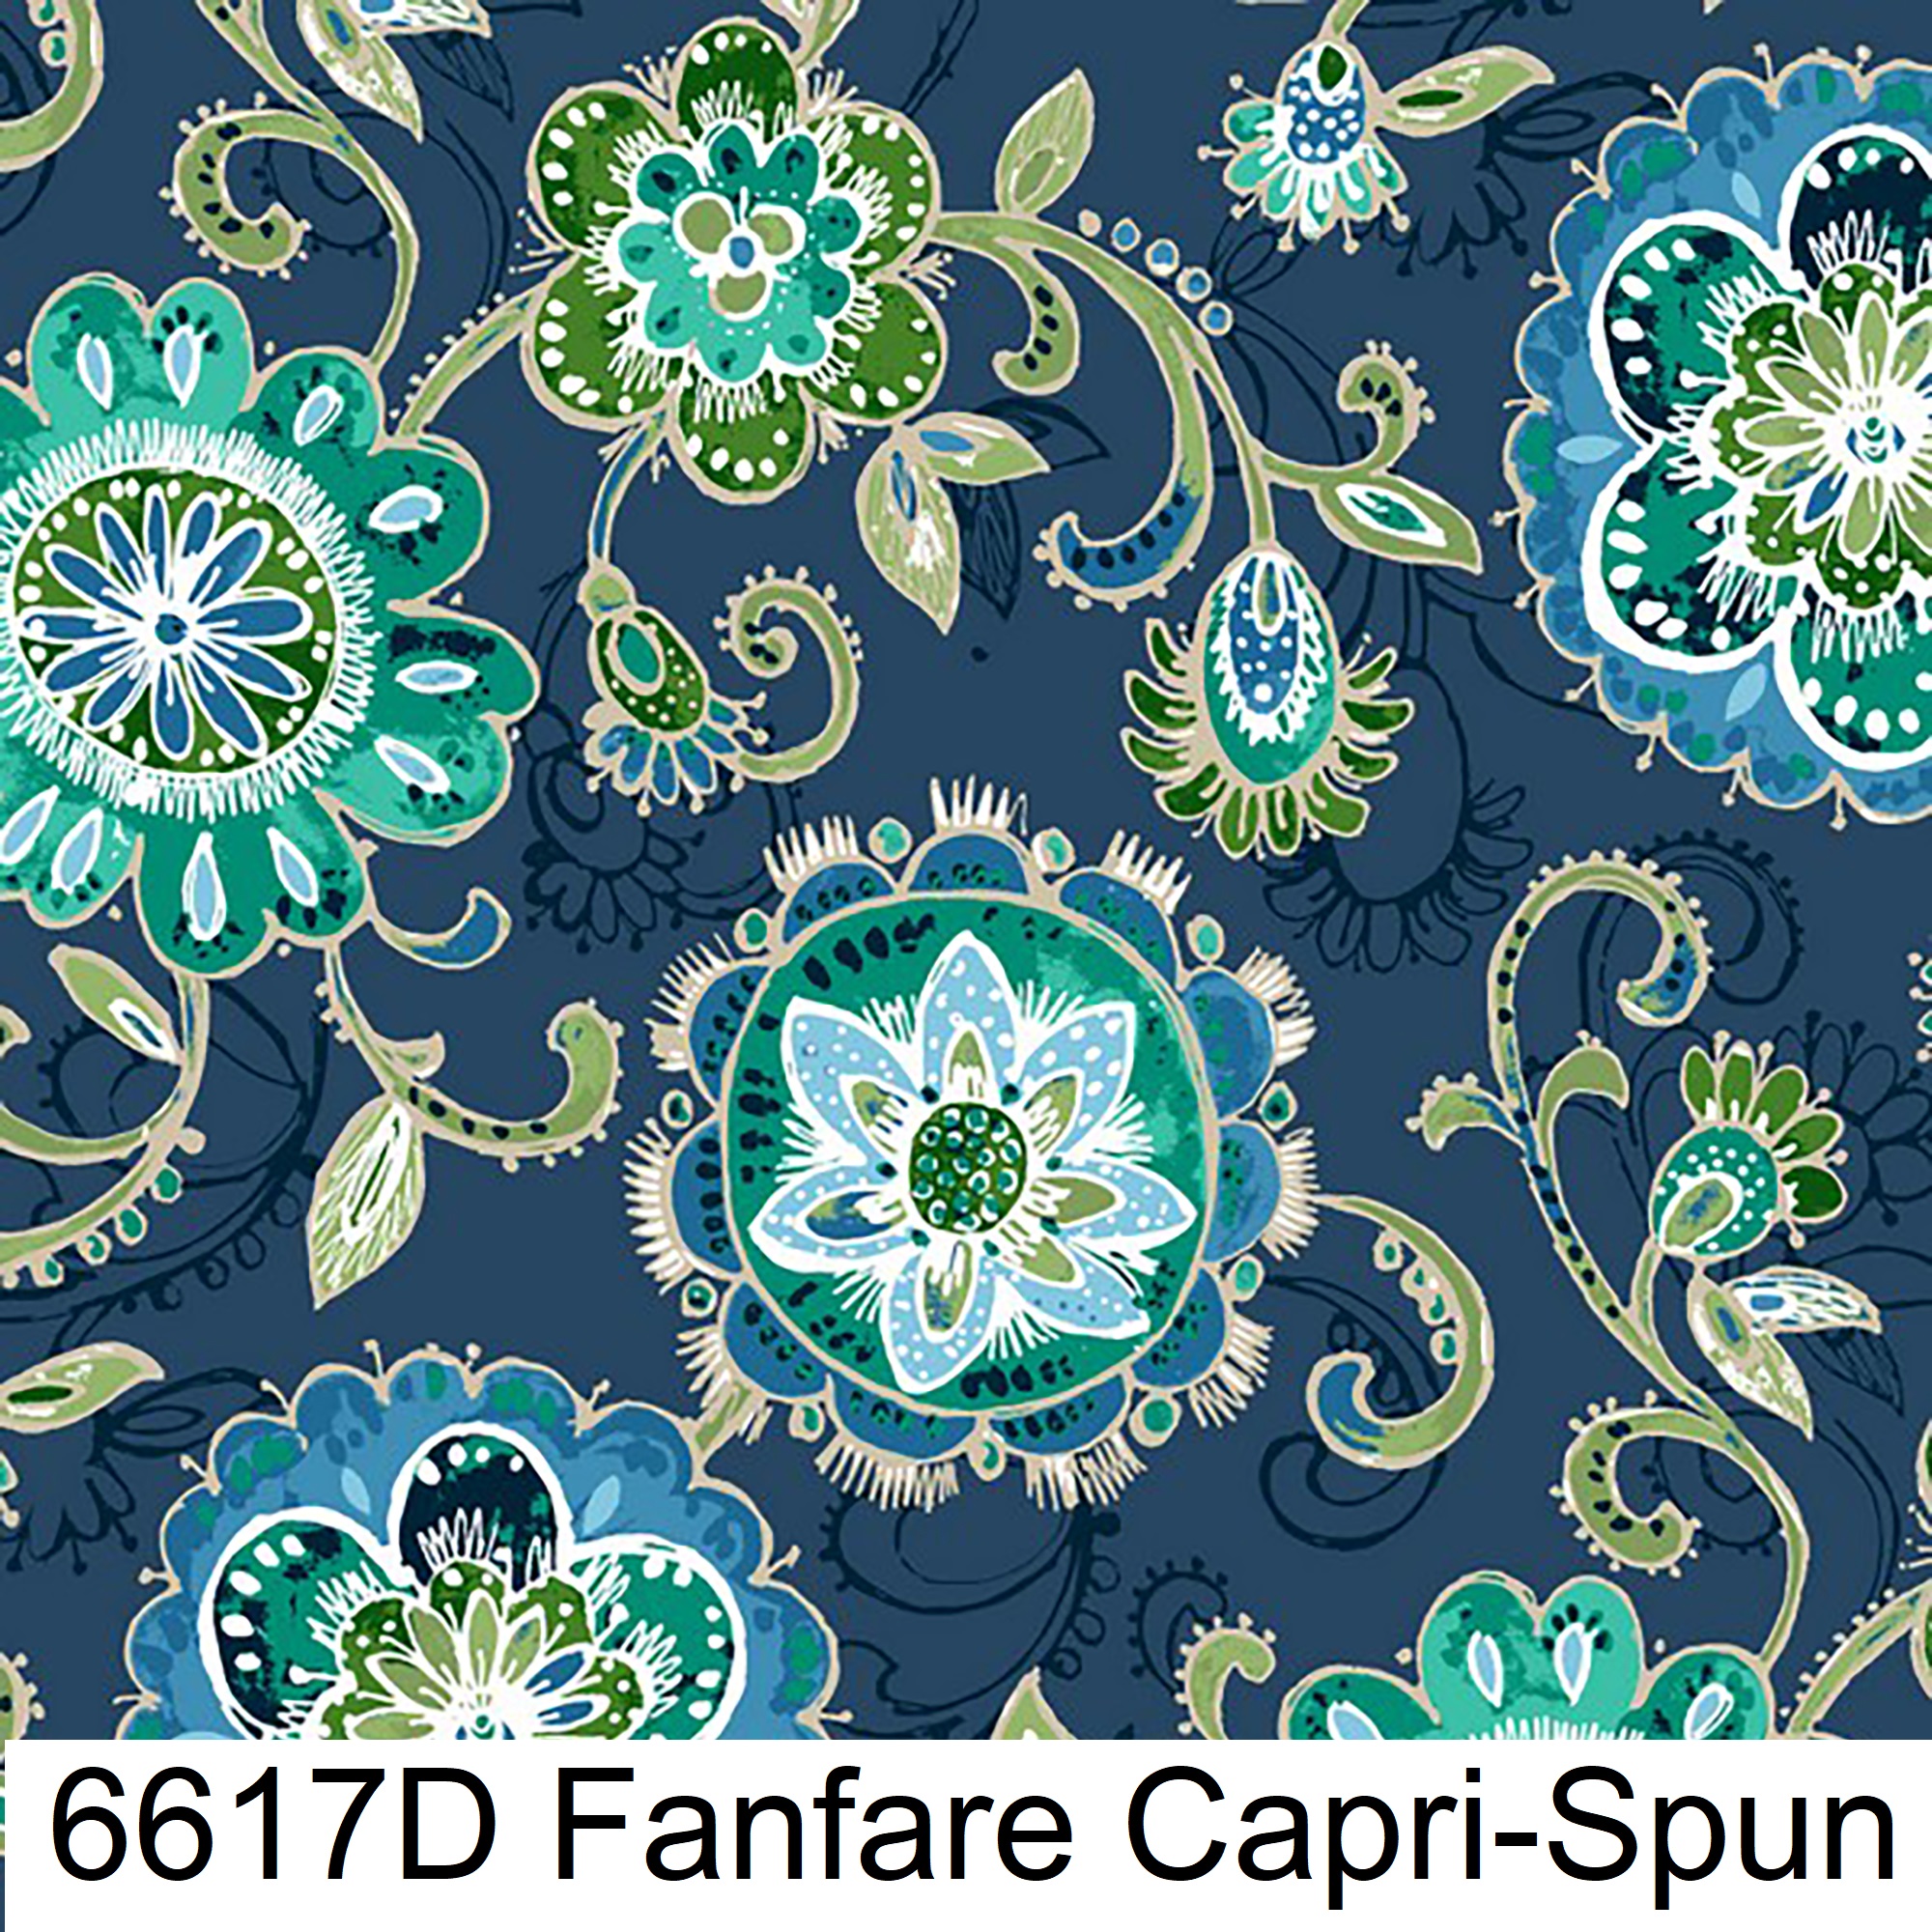 6617D Fanfare Capri-Spun